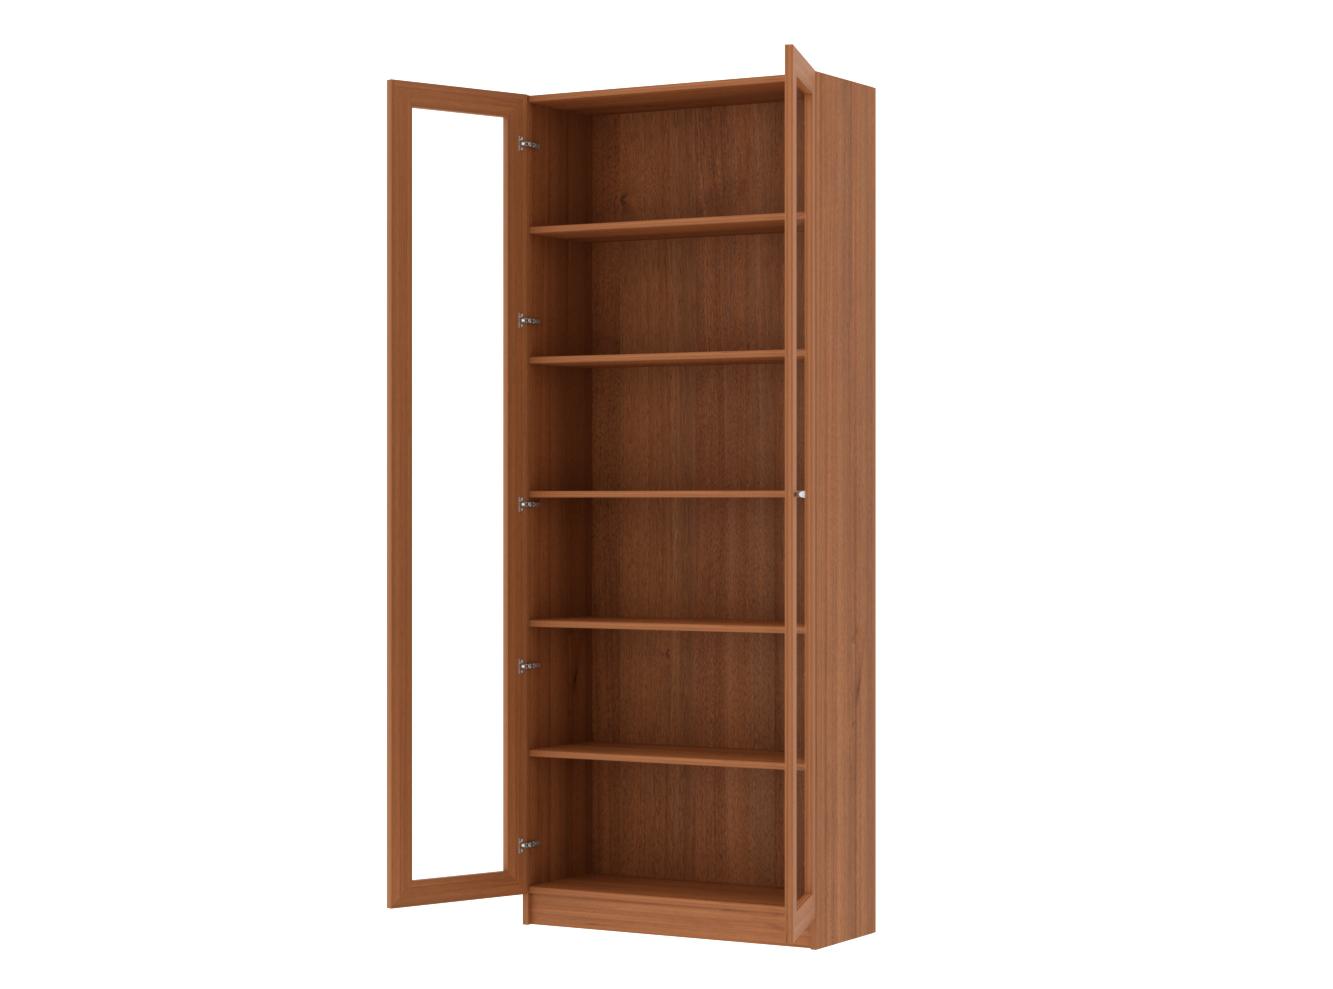 Книжный шкаф Билли 336 walnut guarneri ИКЕА (IKEA) изображение товара